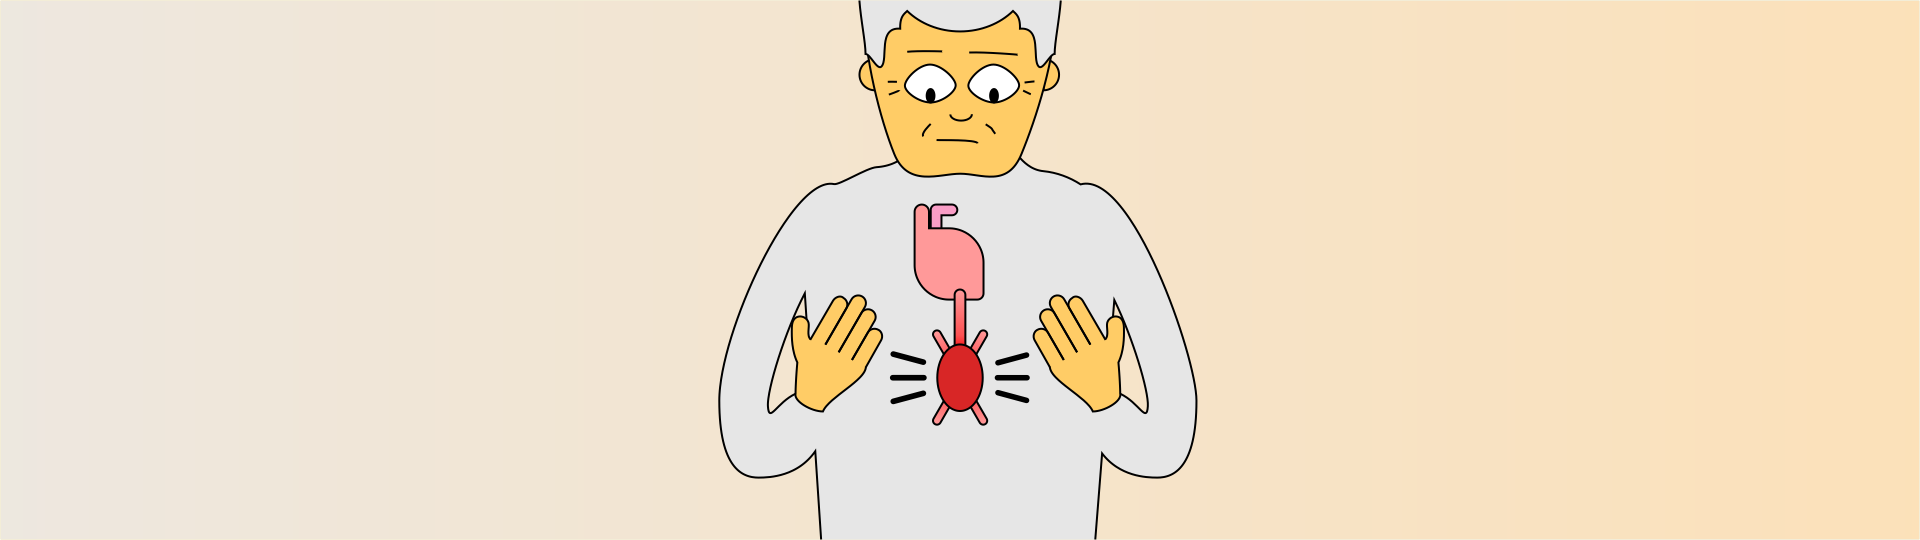 Ilustração de uma pessoa com um aneurisma na artéria aorta.